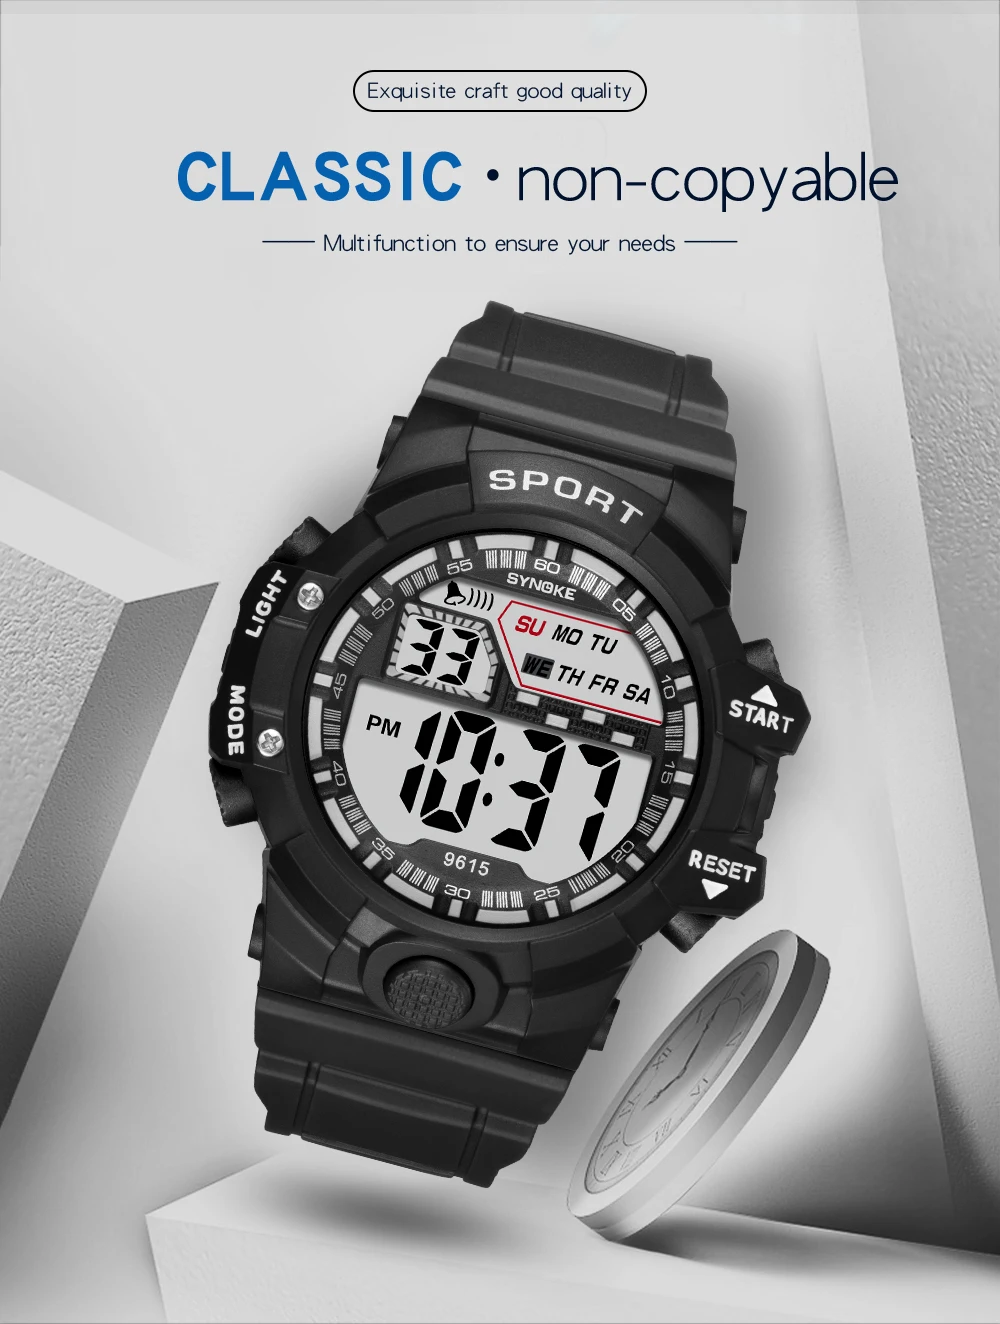 SYNOKE цифровые часы для мужчин детские цифровые военные спортивные студенческие Часы светодиодный силиконовый водонепроницаемый наручные часы для мужчин s Relogio